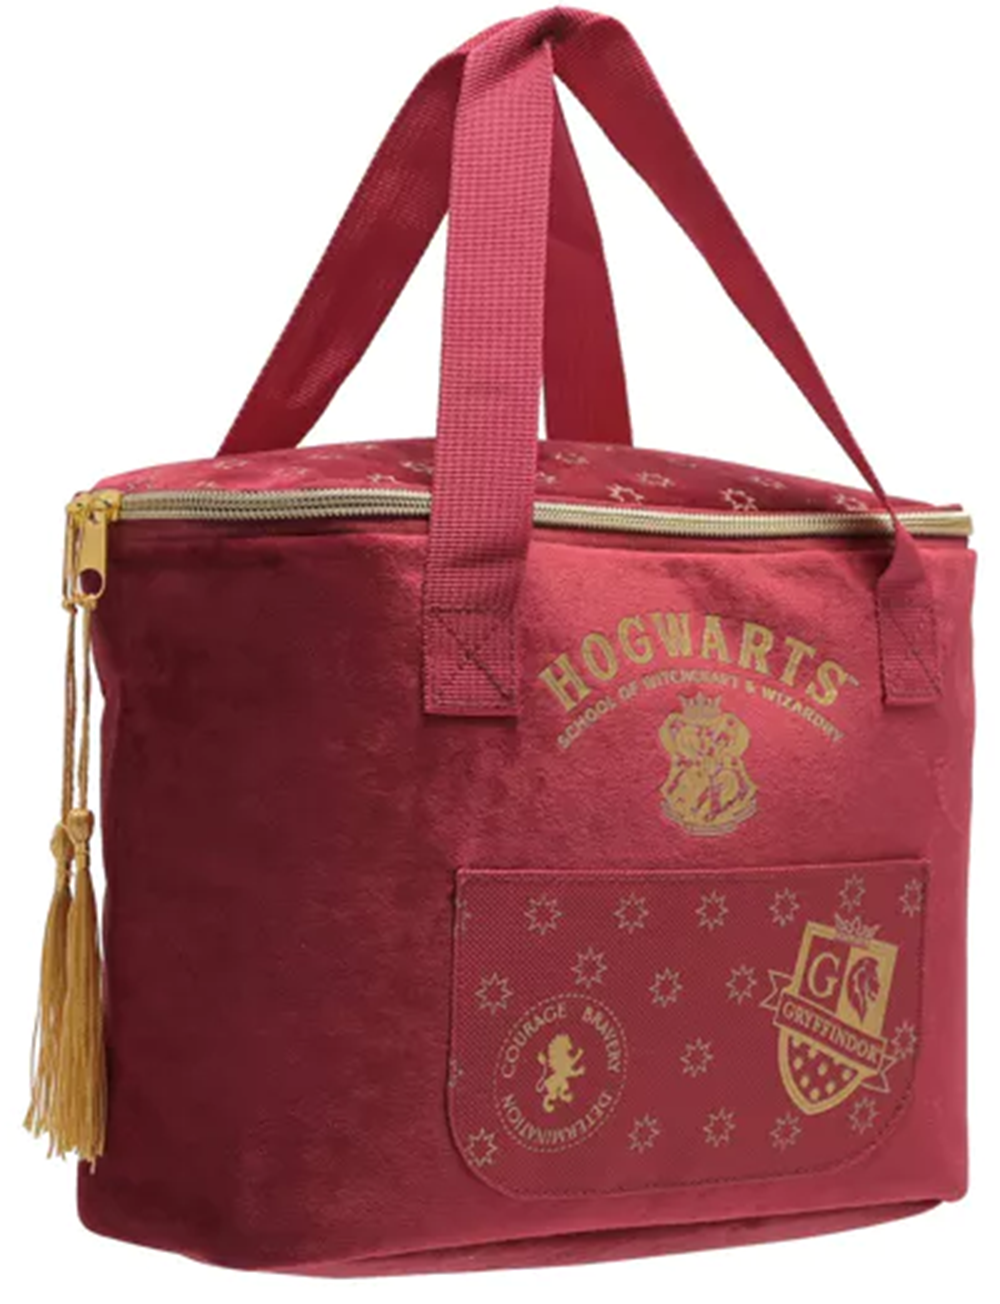 Harry Potter Gryffindor House Lunch Bag